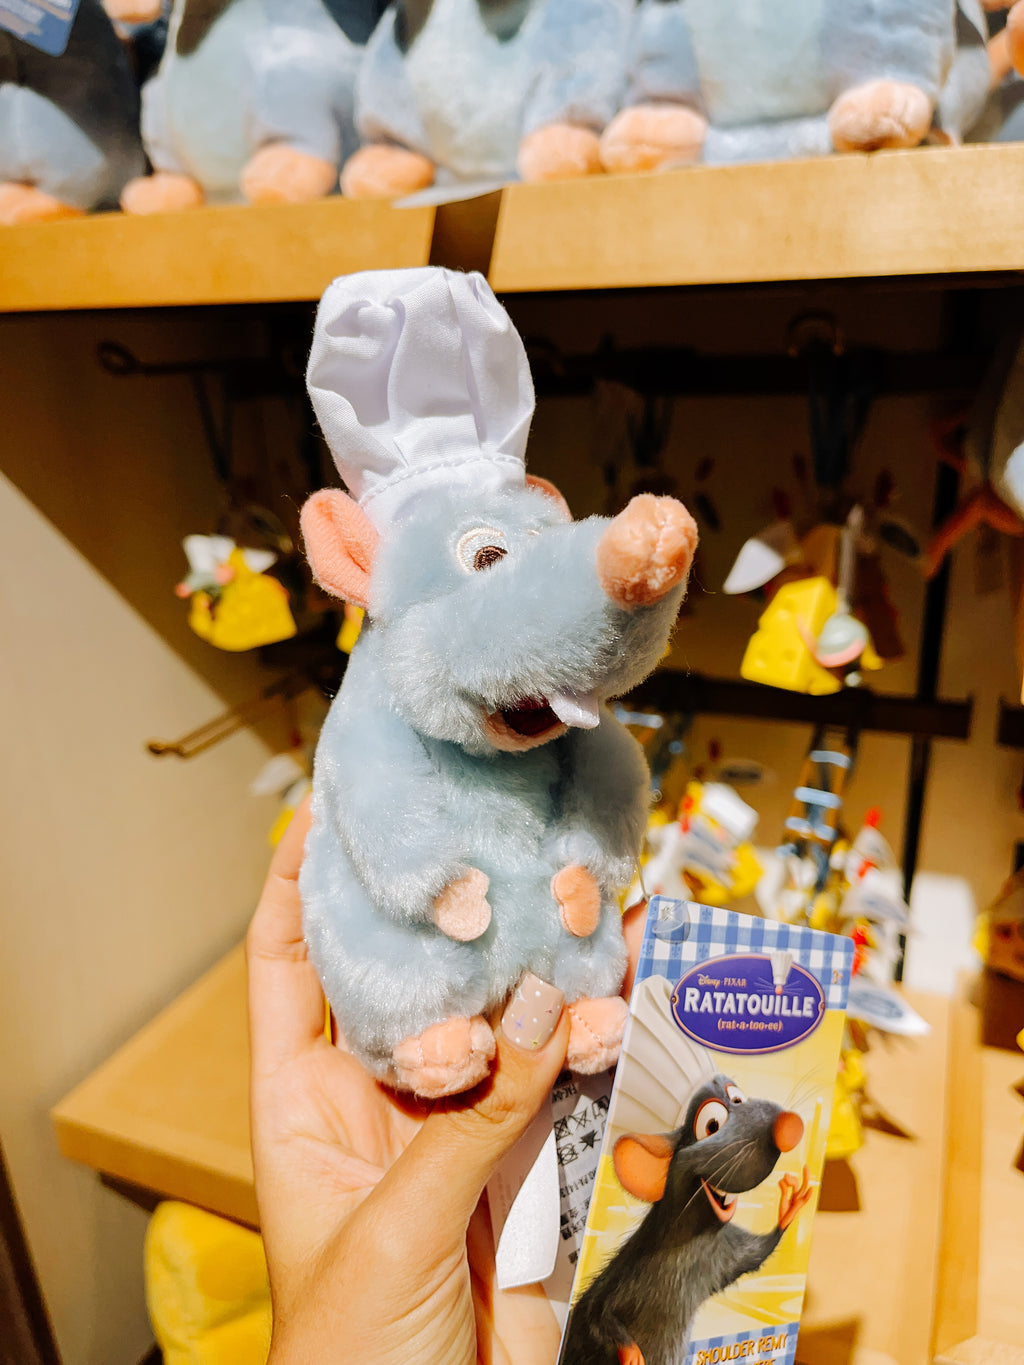 Peluche Disney Ratatouille Rémy